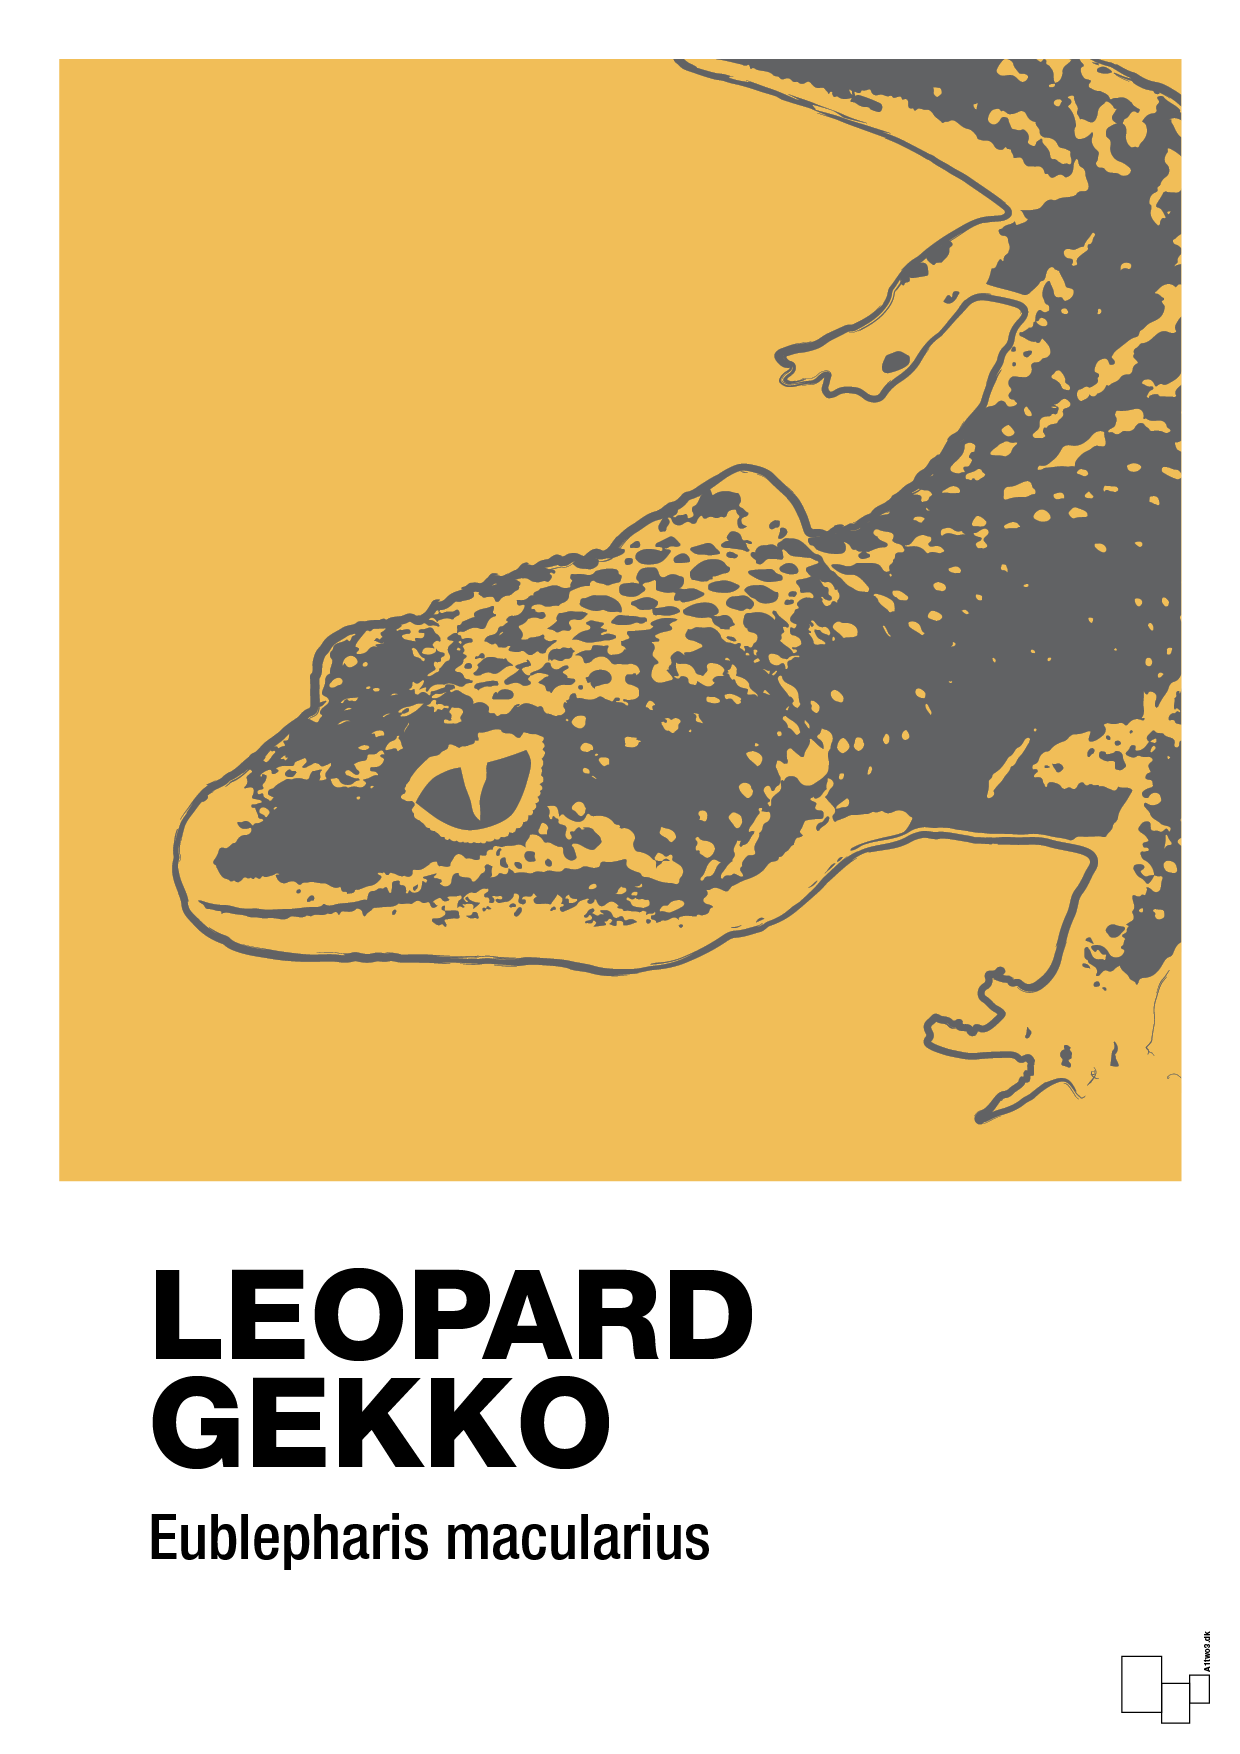 leopard gekko - Plakat med Videnskab i Honeycomb